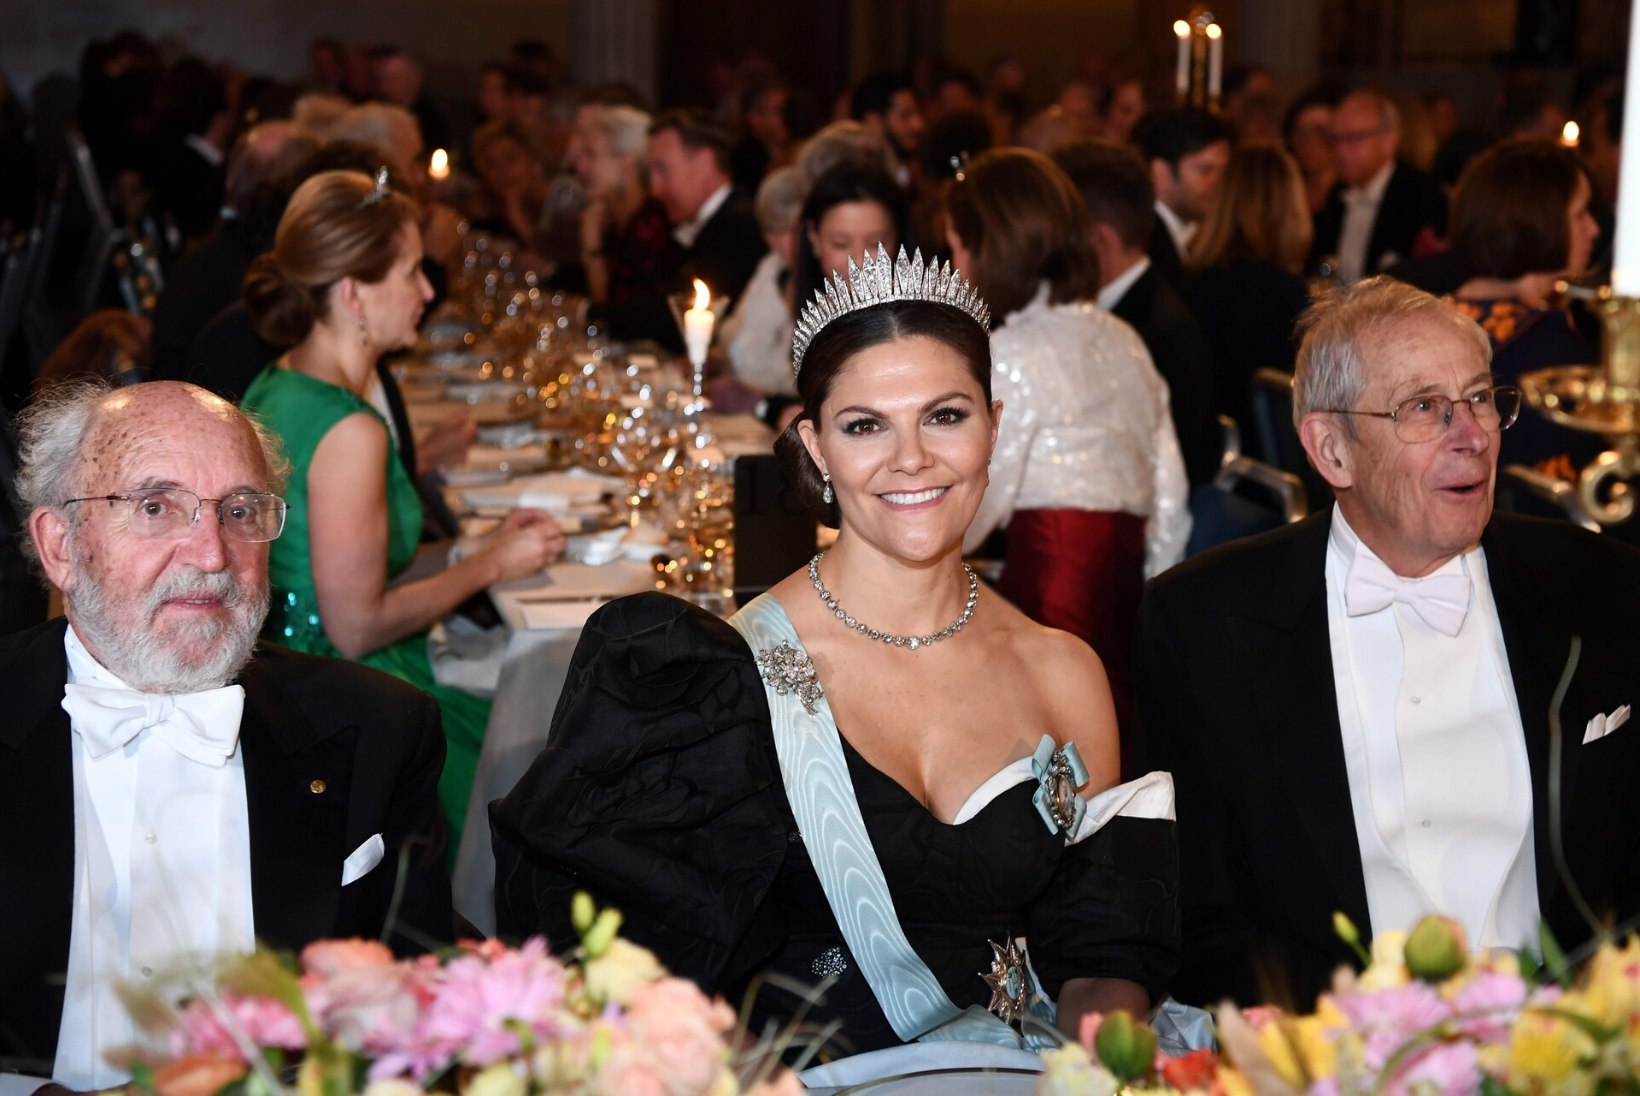 Rootsi kroonprintsess Victoria haigestus aasta tähtsaima gala eel